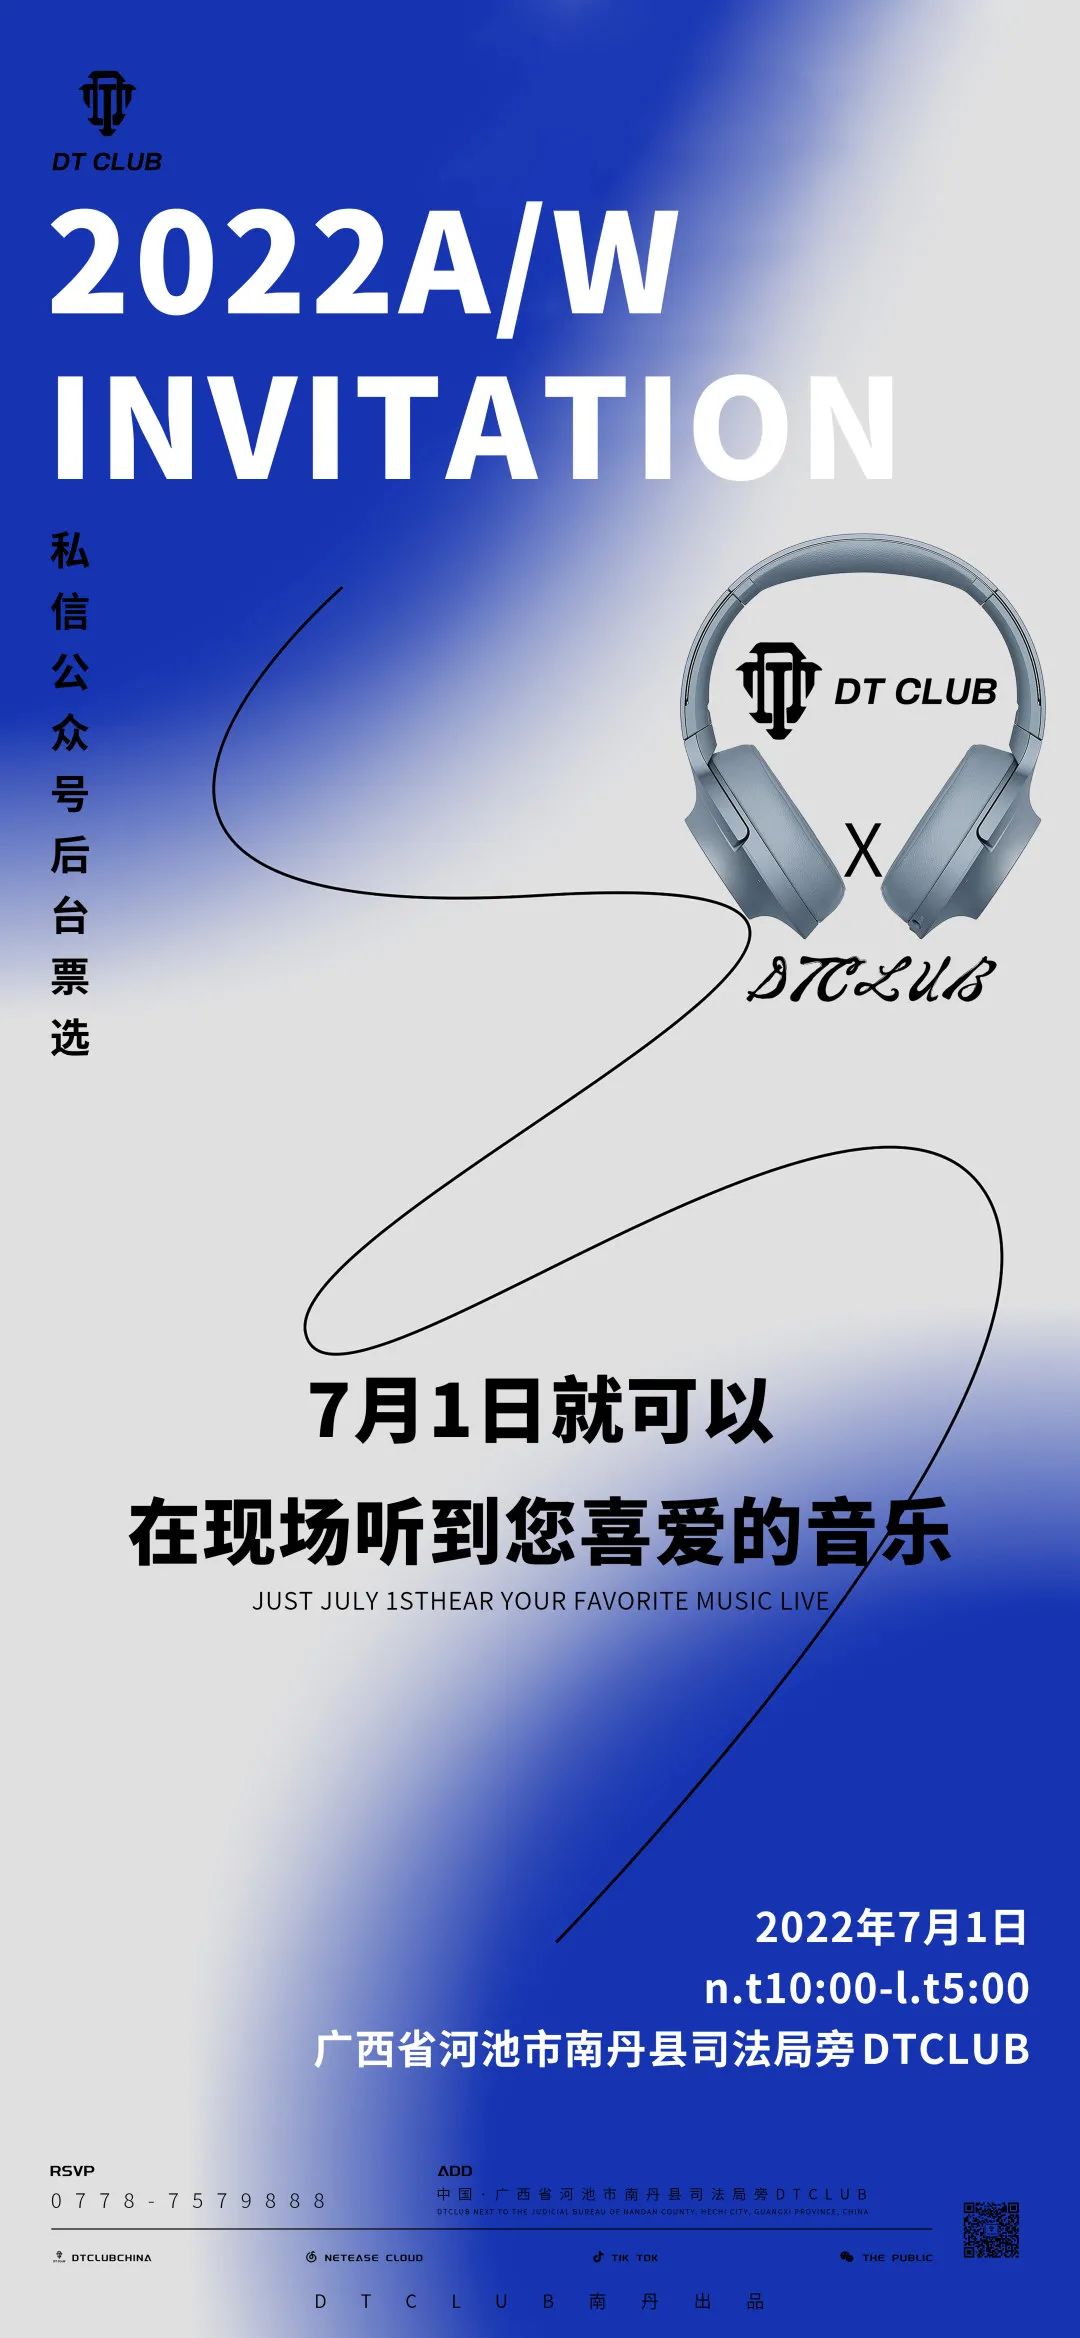 DT CLUB 第一期票选歌单新宣出炉 先来一睹为快-南丹DT酒吧/DT CLUB